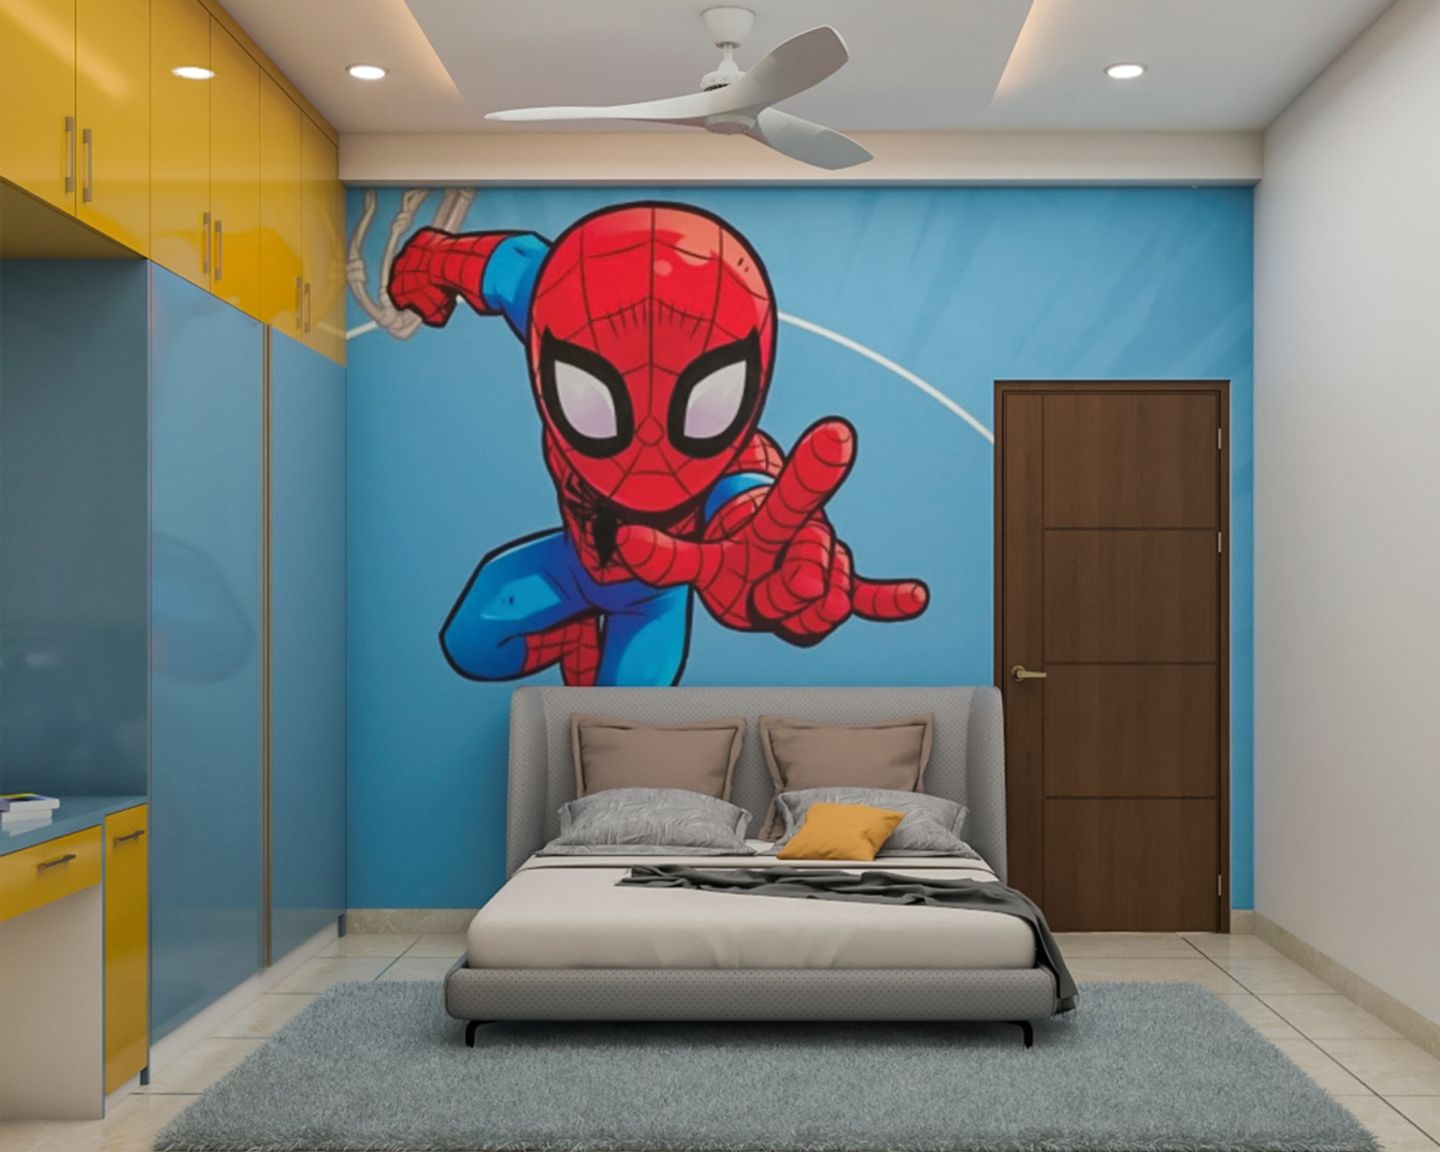 Compact Kid's Bedroom Design With Spiderman Wallpaper - Livspace